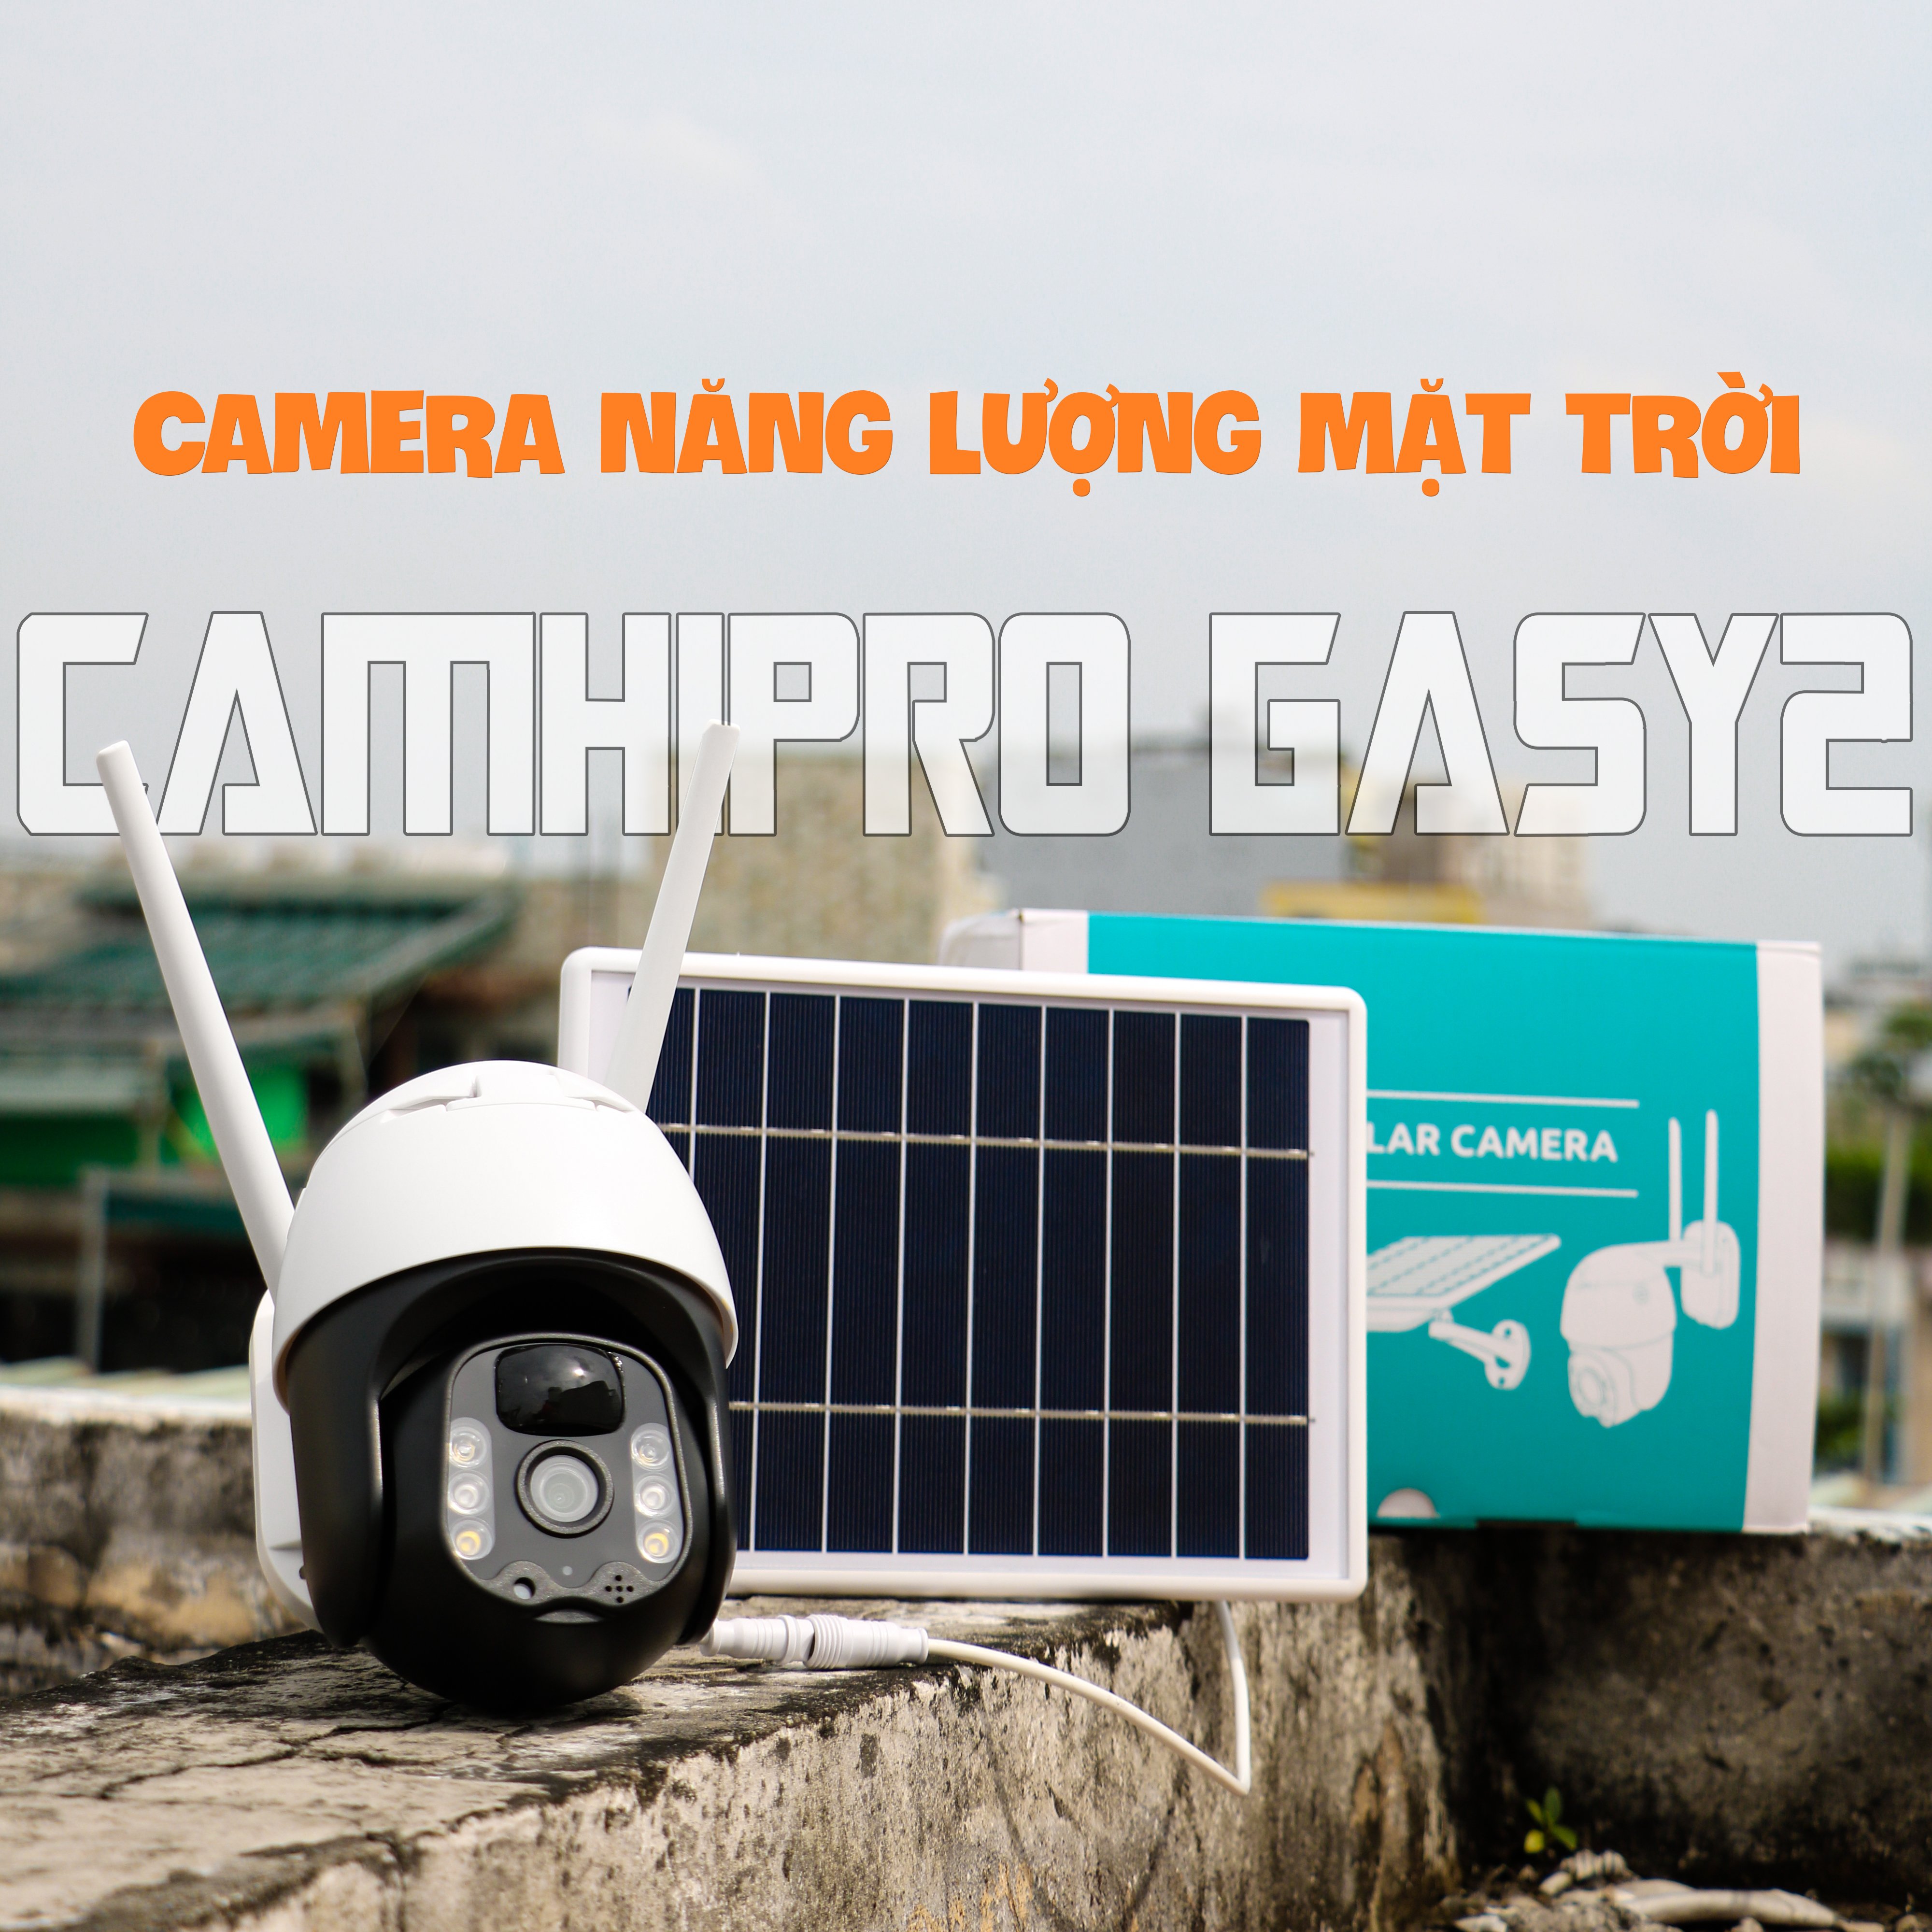 Camera năng lượng mặt trời dùng sim 4G CAMHIPRO, xoay 360 độ, chống nước